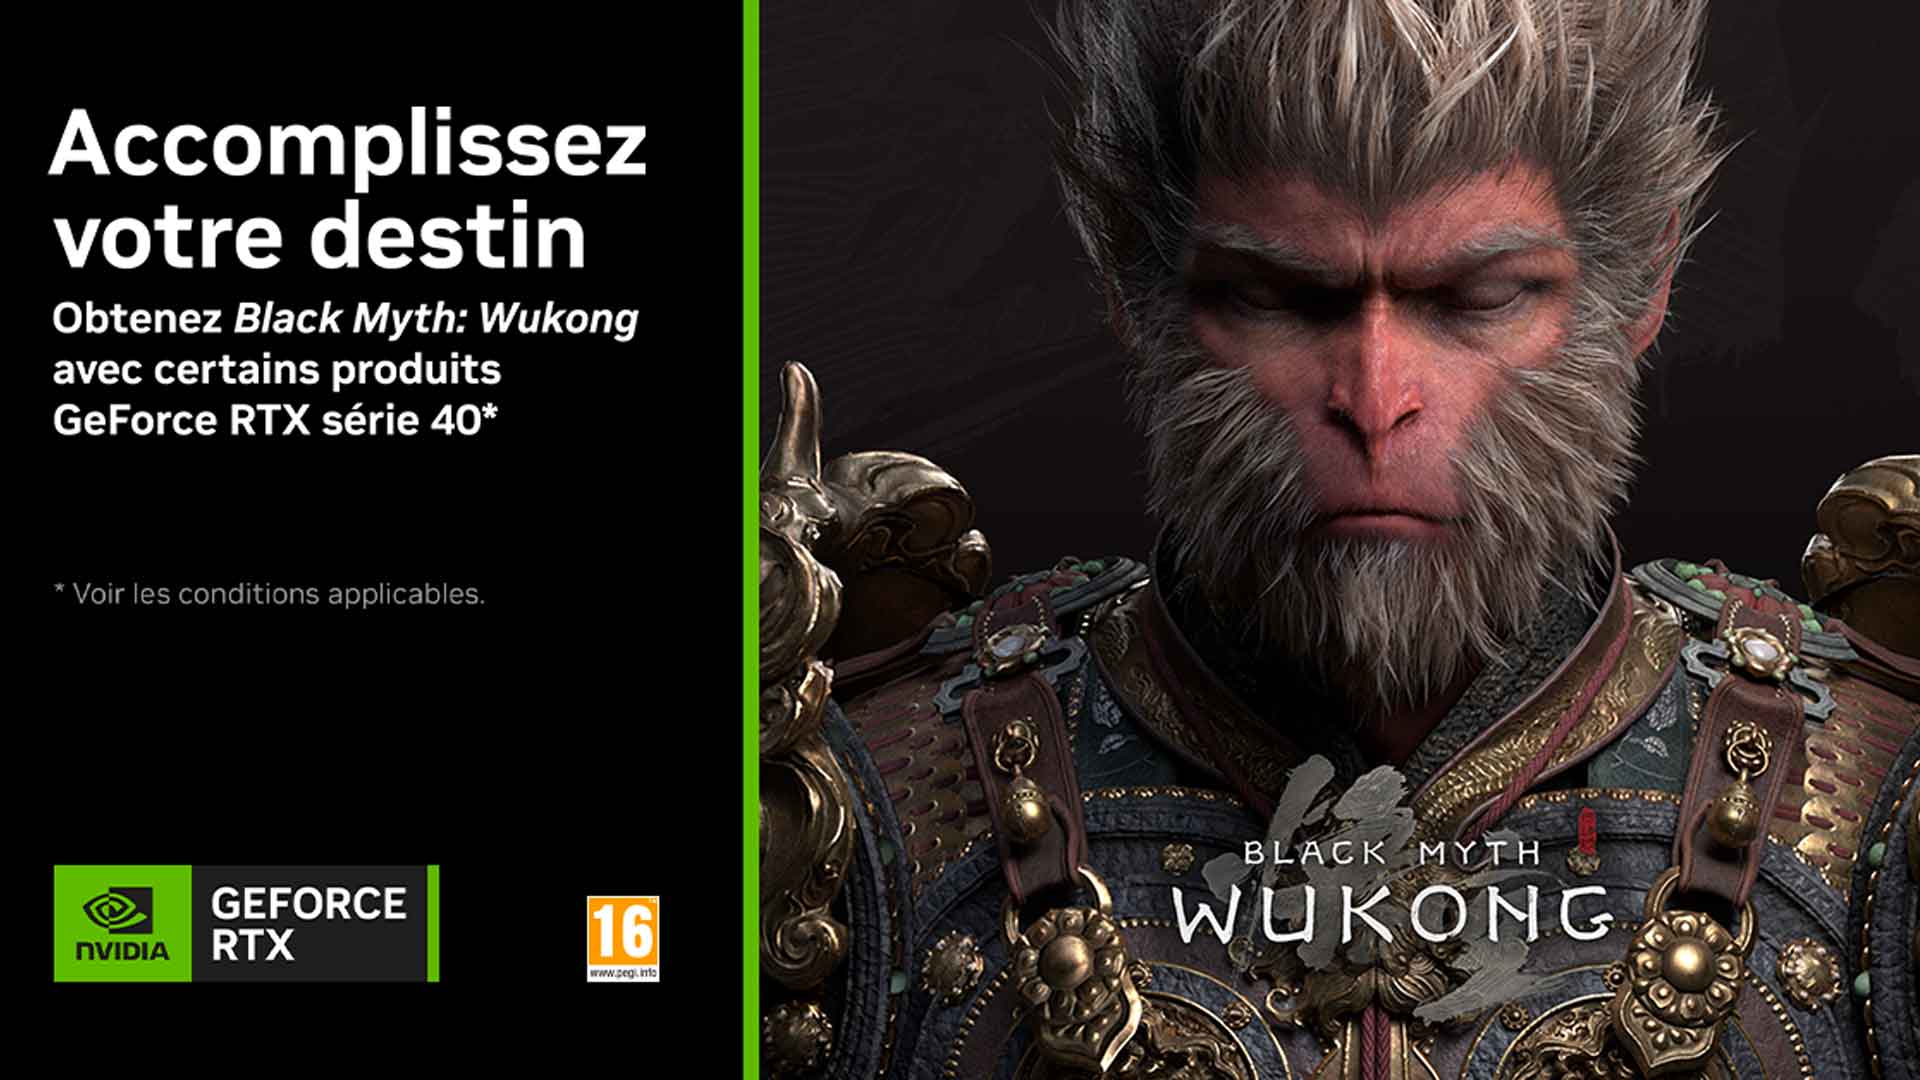 Bundle "Accomplissez votre destin" de Nvidia - le jeu Black Myth : Wukong est offert